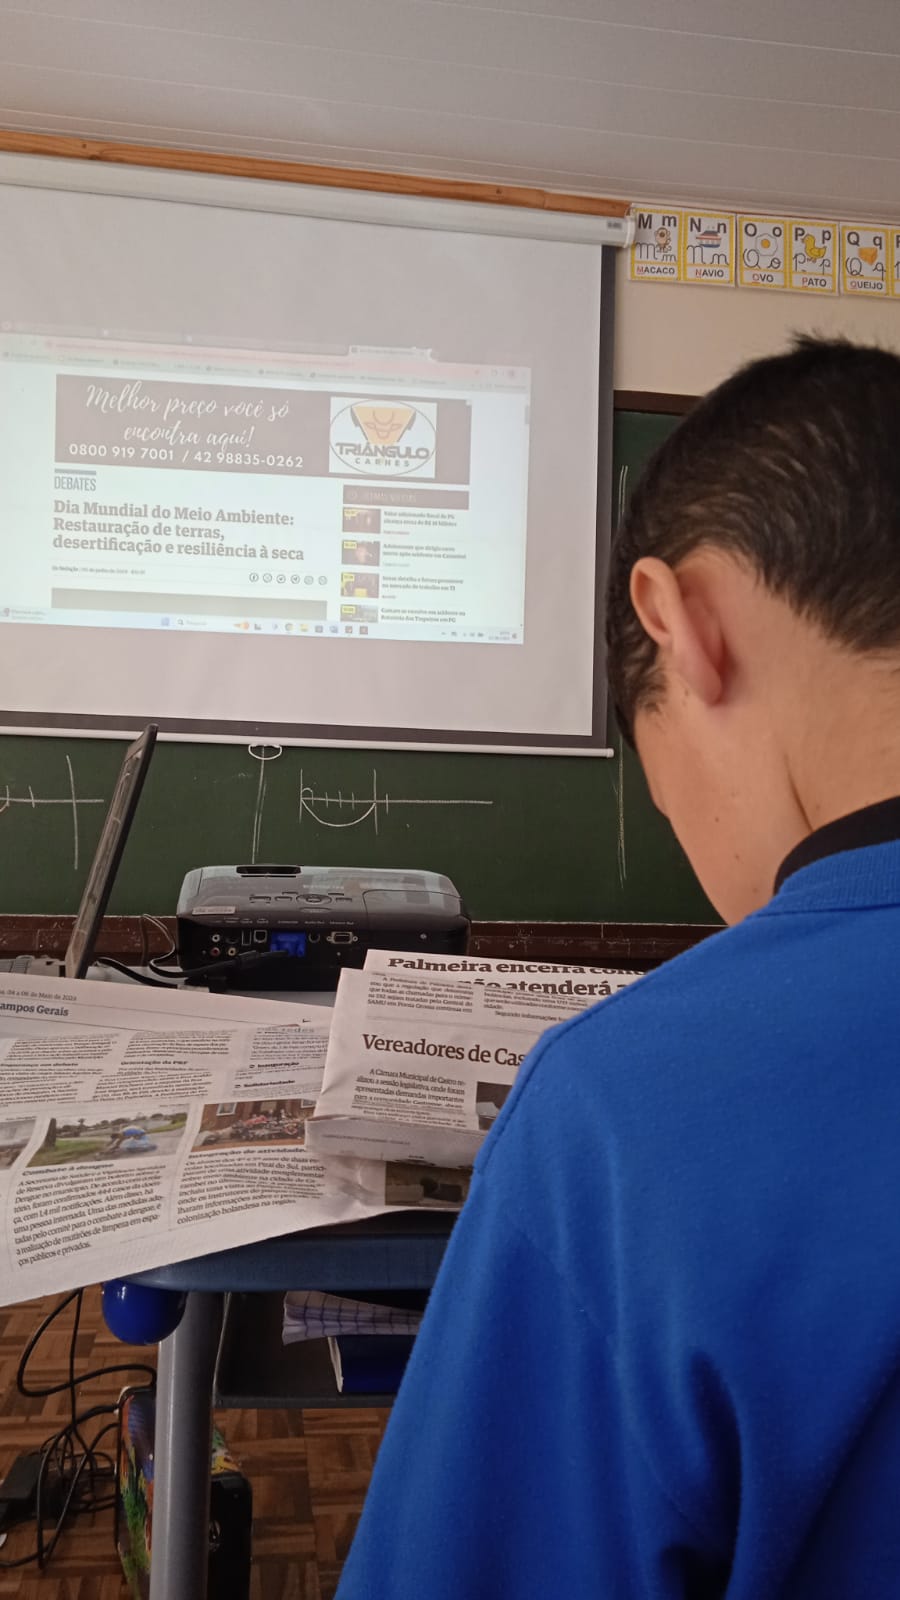 A proposta utilizando as edições do Jornal da Manhã oportunizou uma experiência diferenciada aos alunos